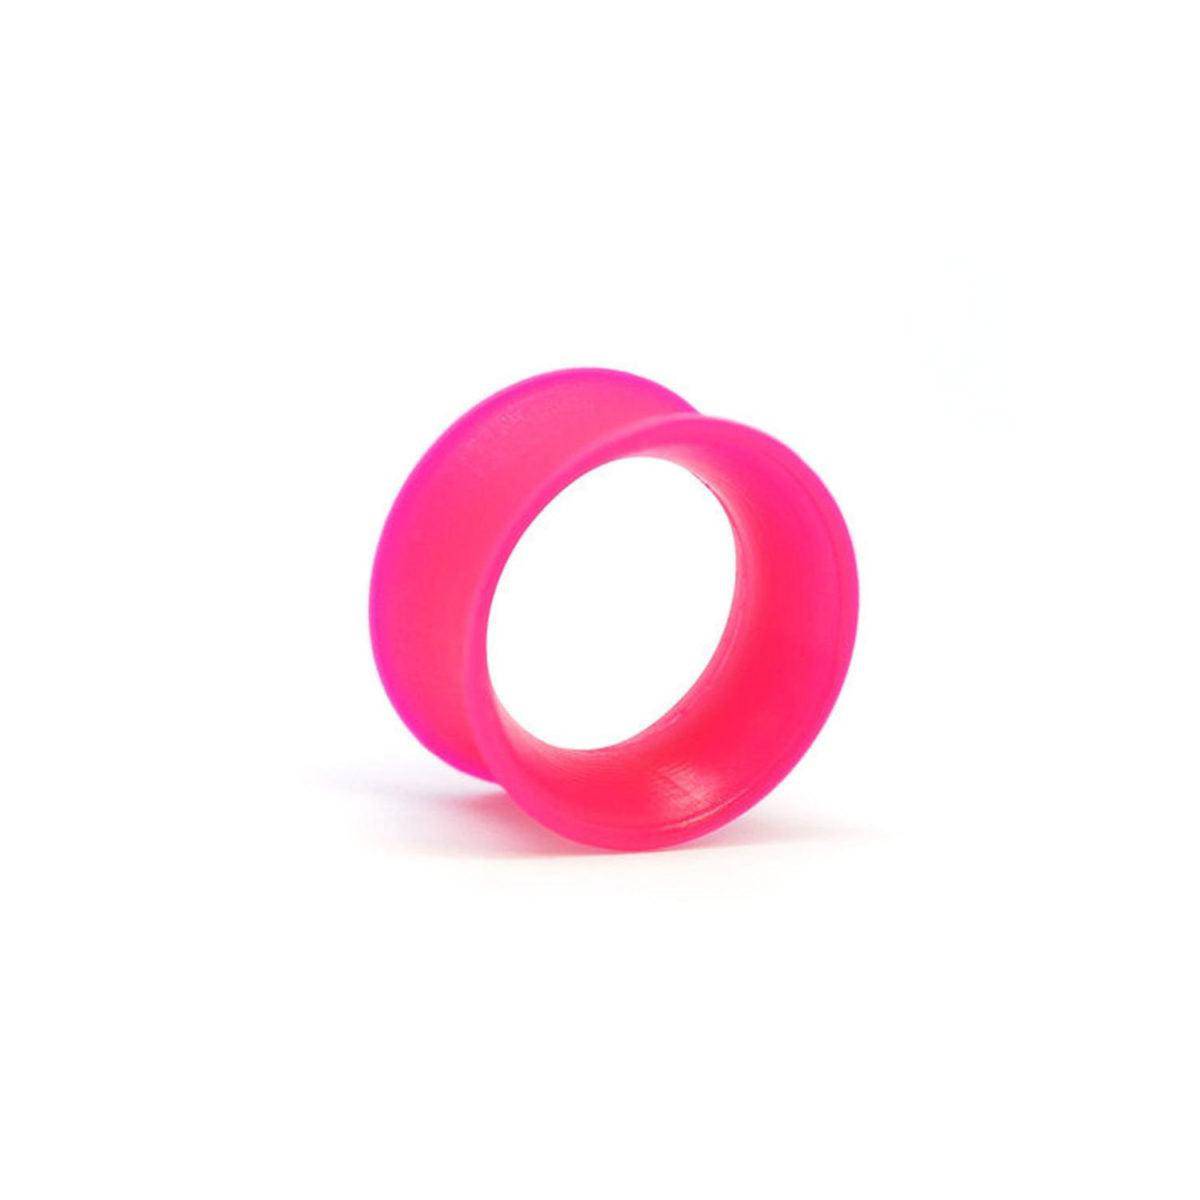 KAOS Eyelet - Hot Pink